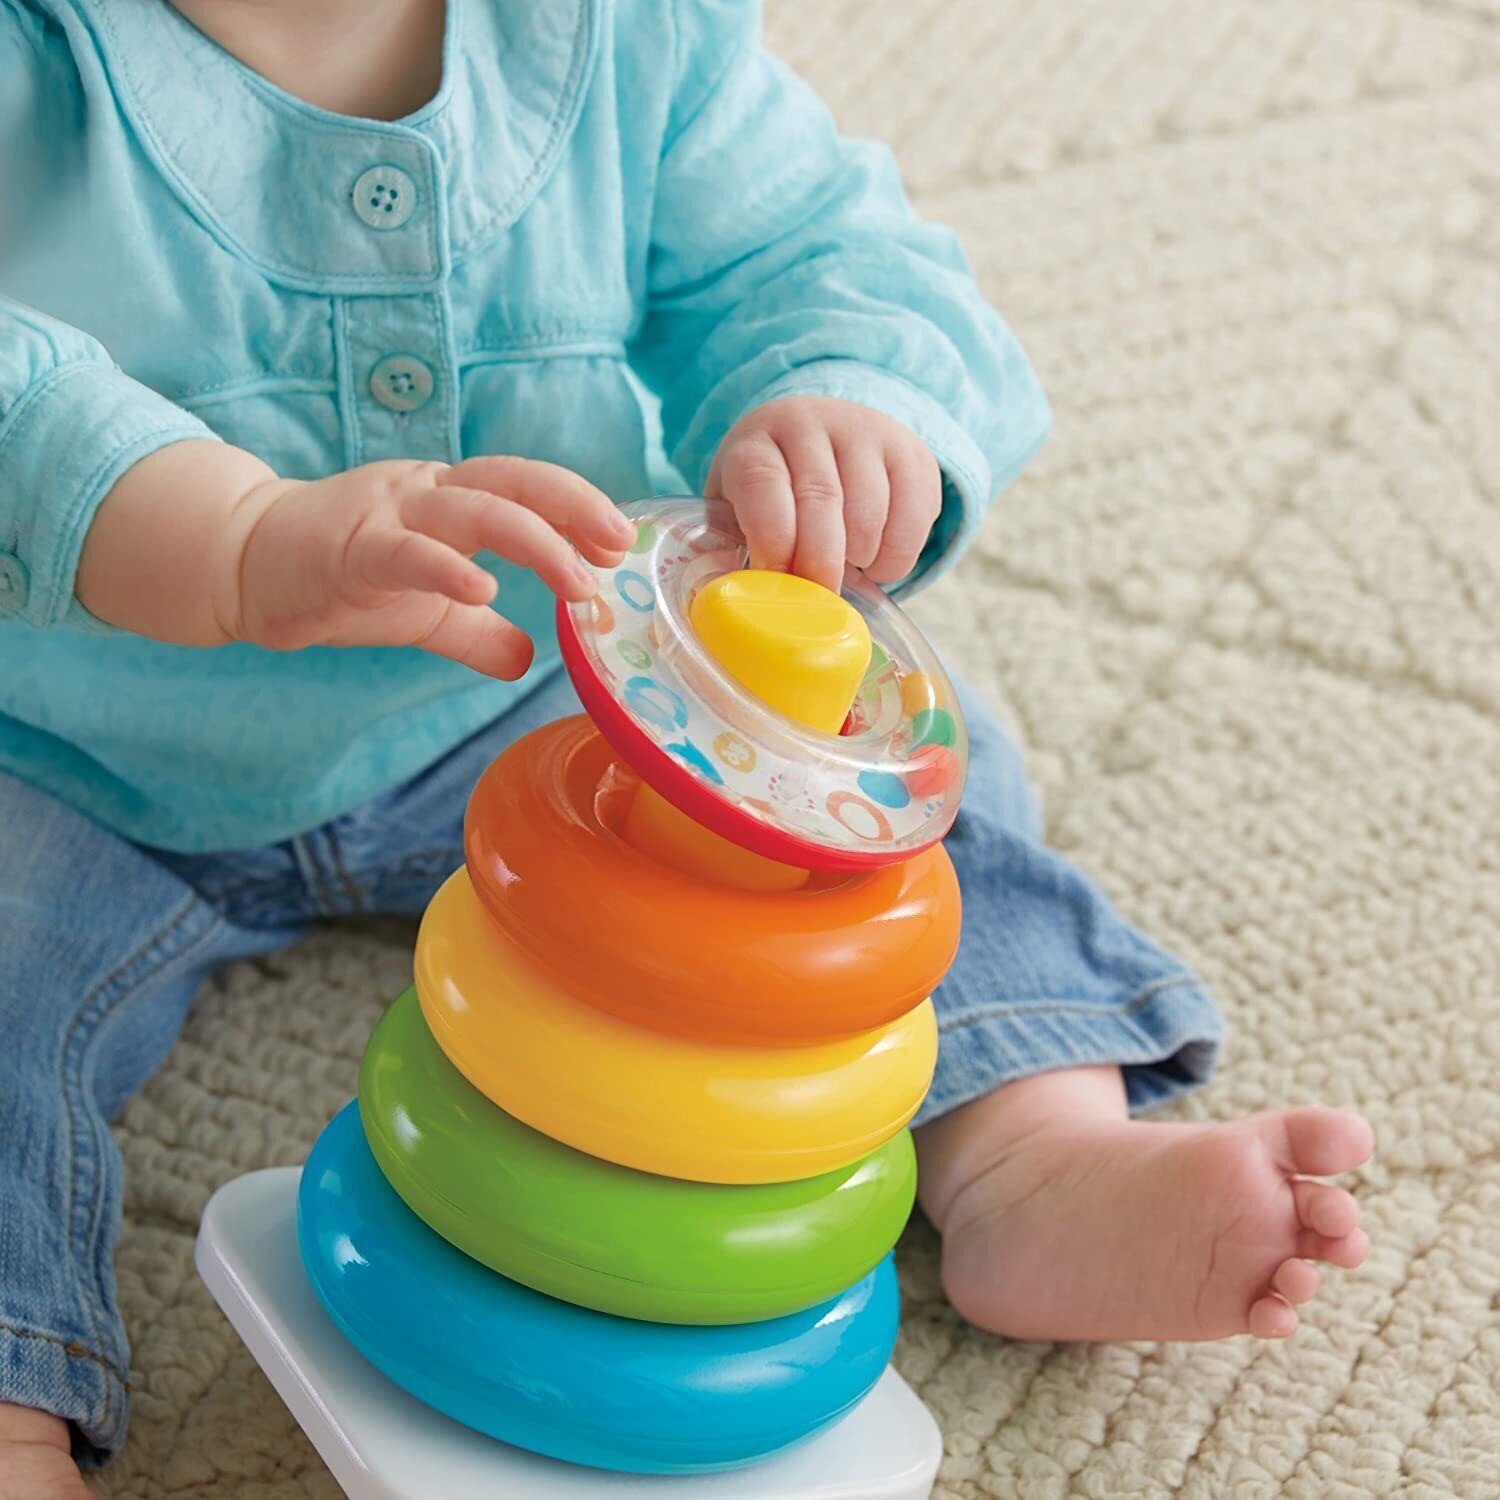 Baby Toy Gift Set: Stacking Toy & Blocks